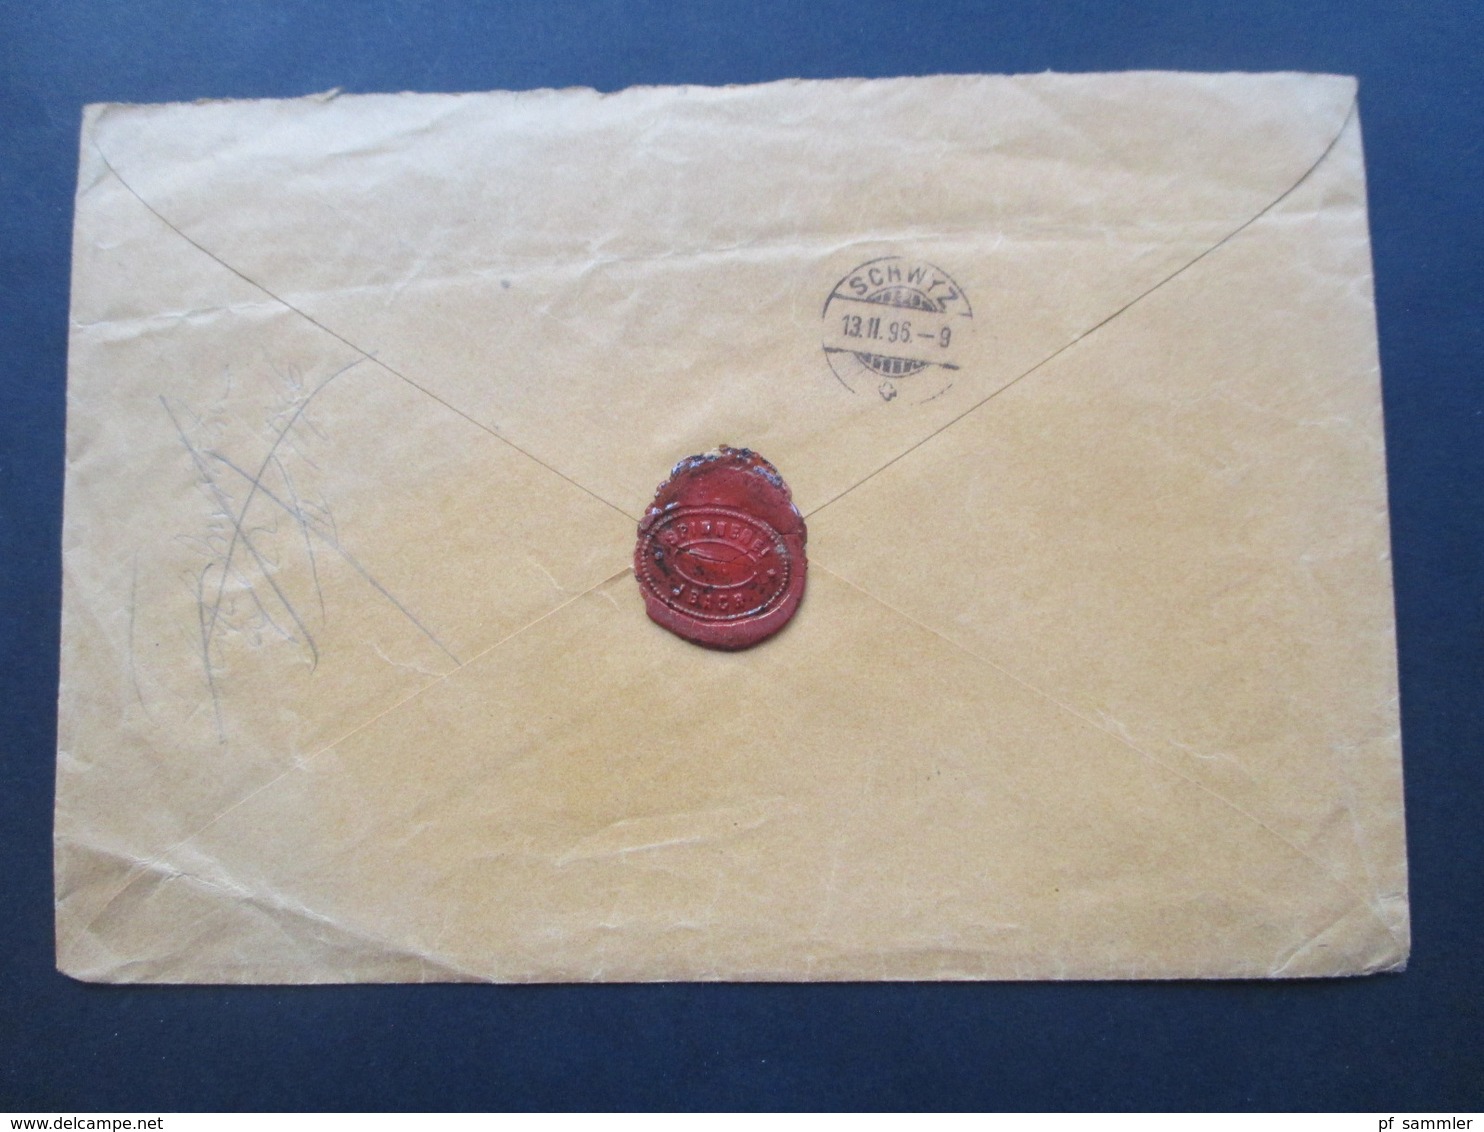 Schweiz 1896 Charge Brief / Einschreiben R Ibach No 34 nach Schwayz. Spinnerei Jbach